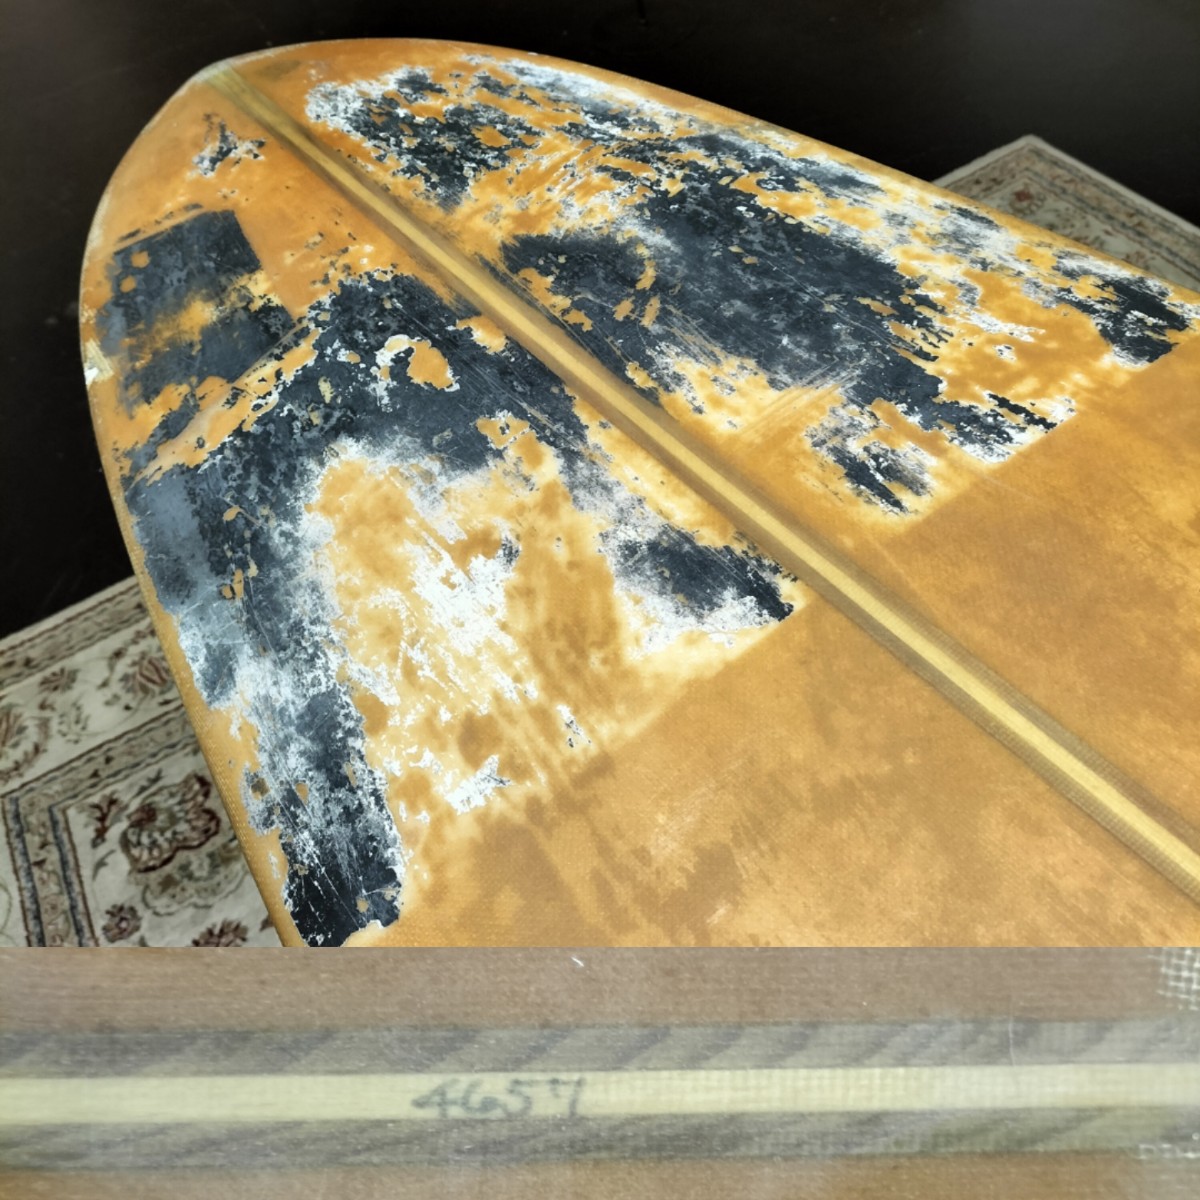 WARDY SURFBOARDS /  60`S LOG 9`7